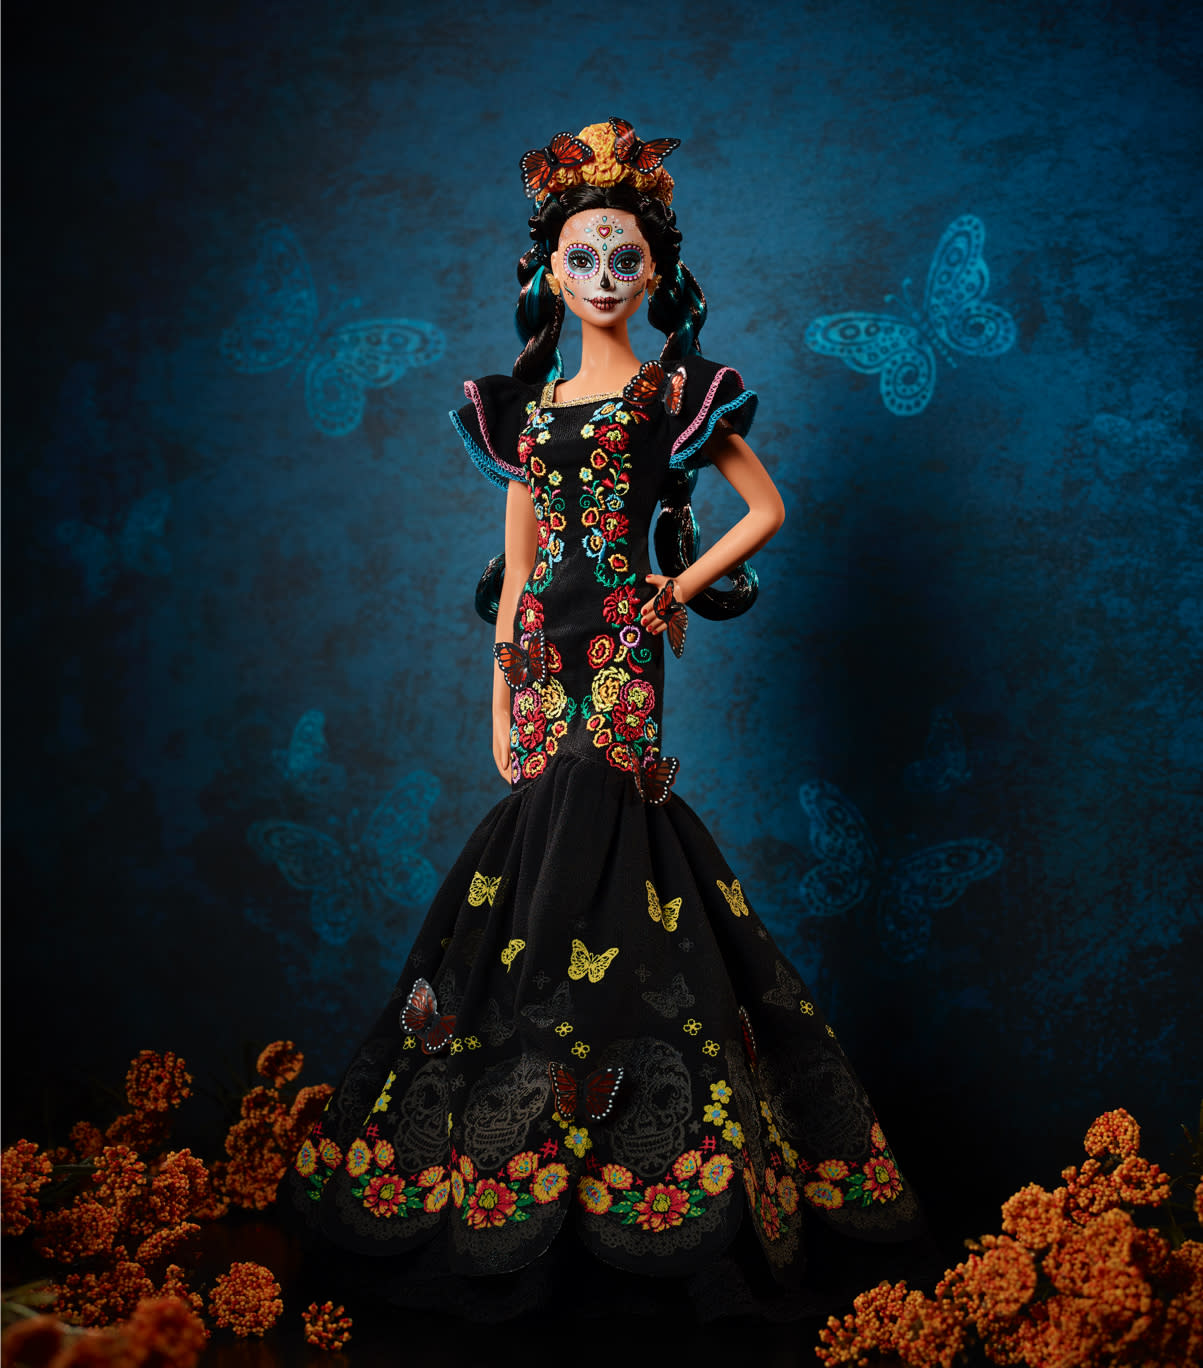 Mattel is releasing a 'Día de los Muertos' Barbie doll for Mexican